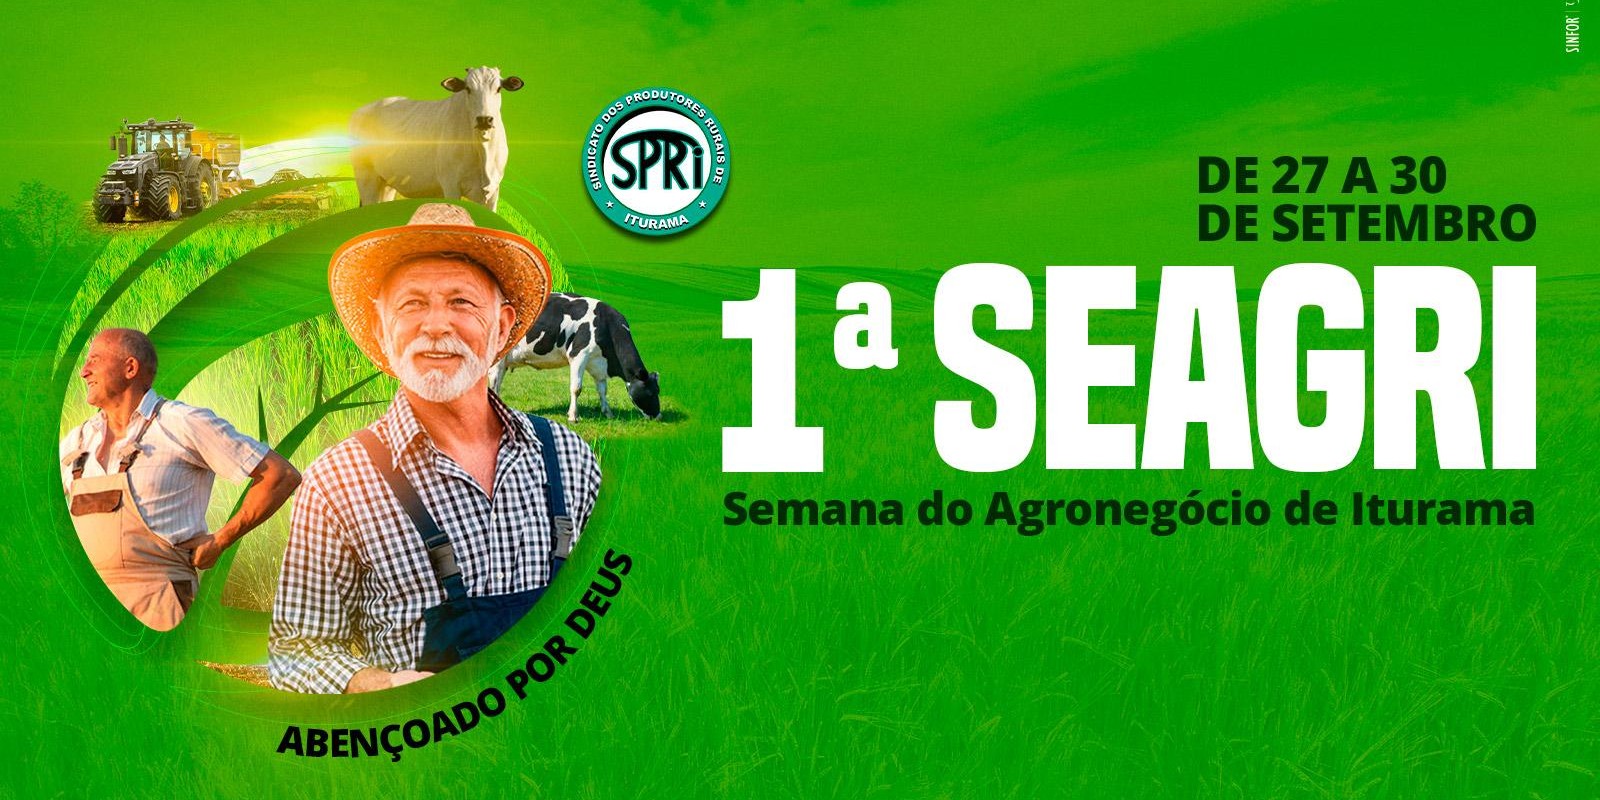 1ª SEAGRI - Semana do Agronegócio de Iturama 27 à 30/09 em Iturama-MG